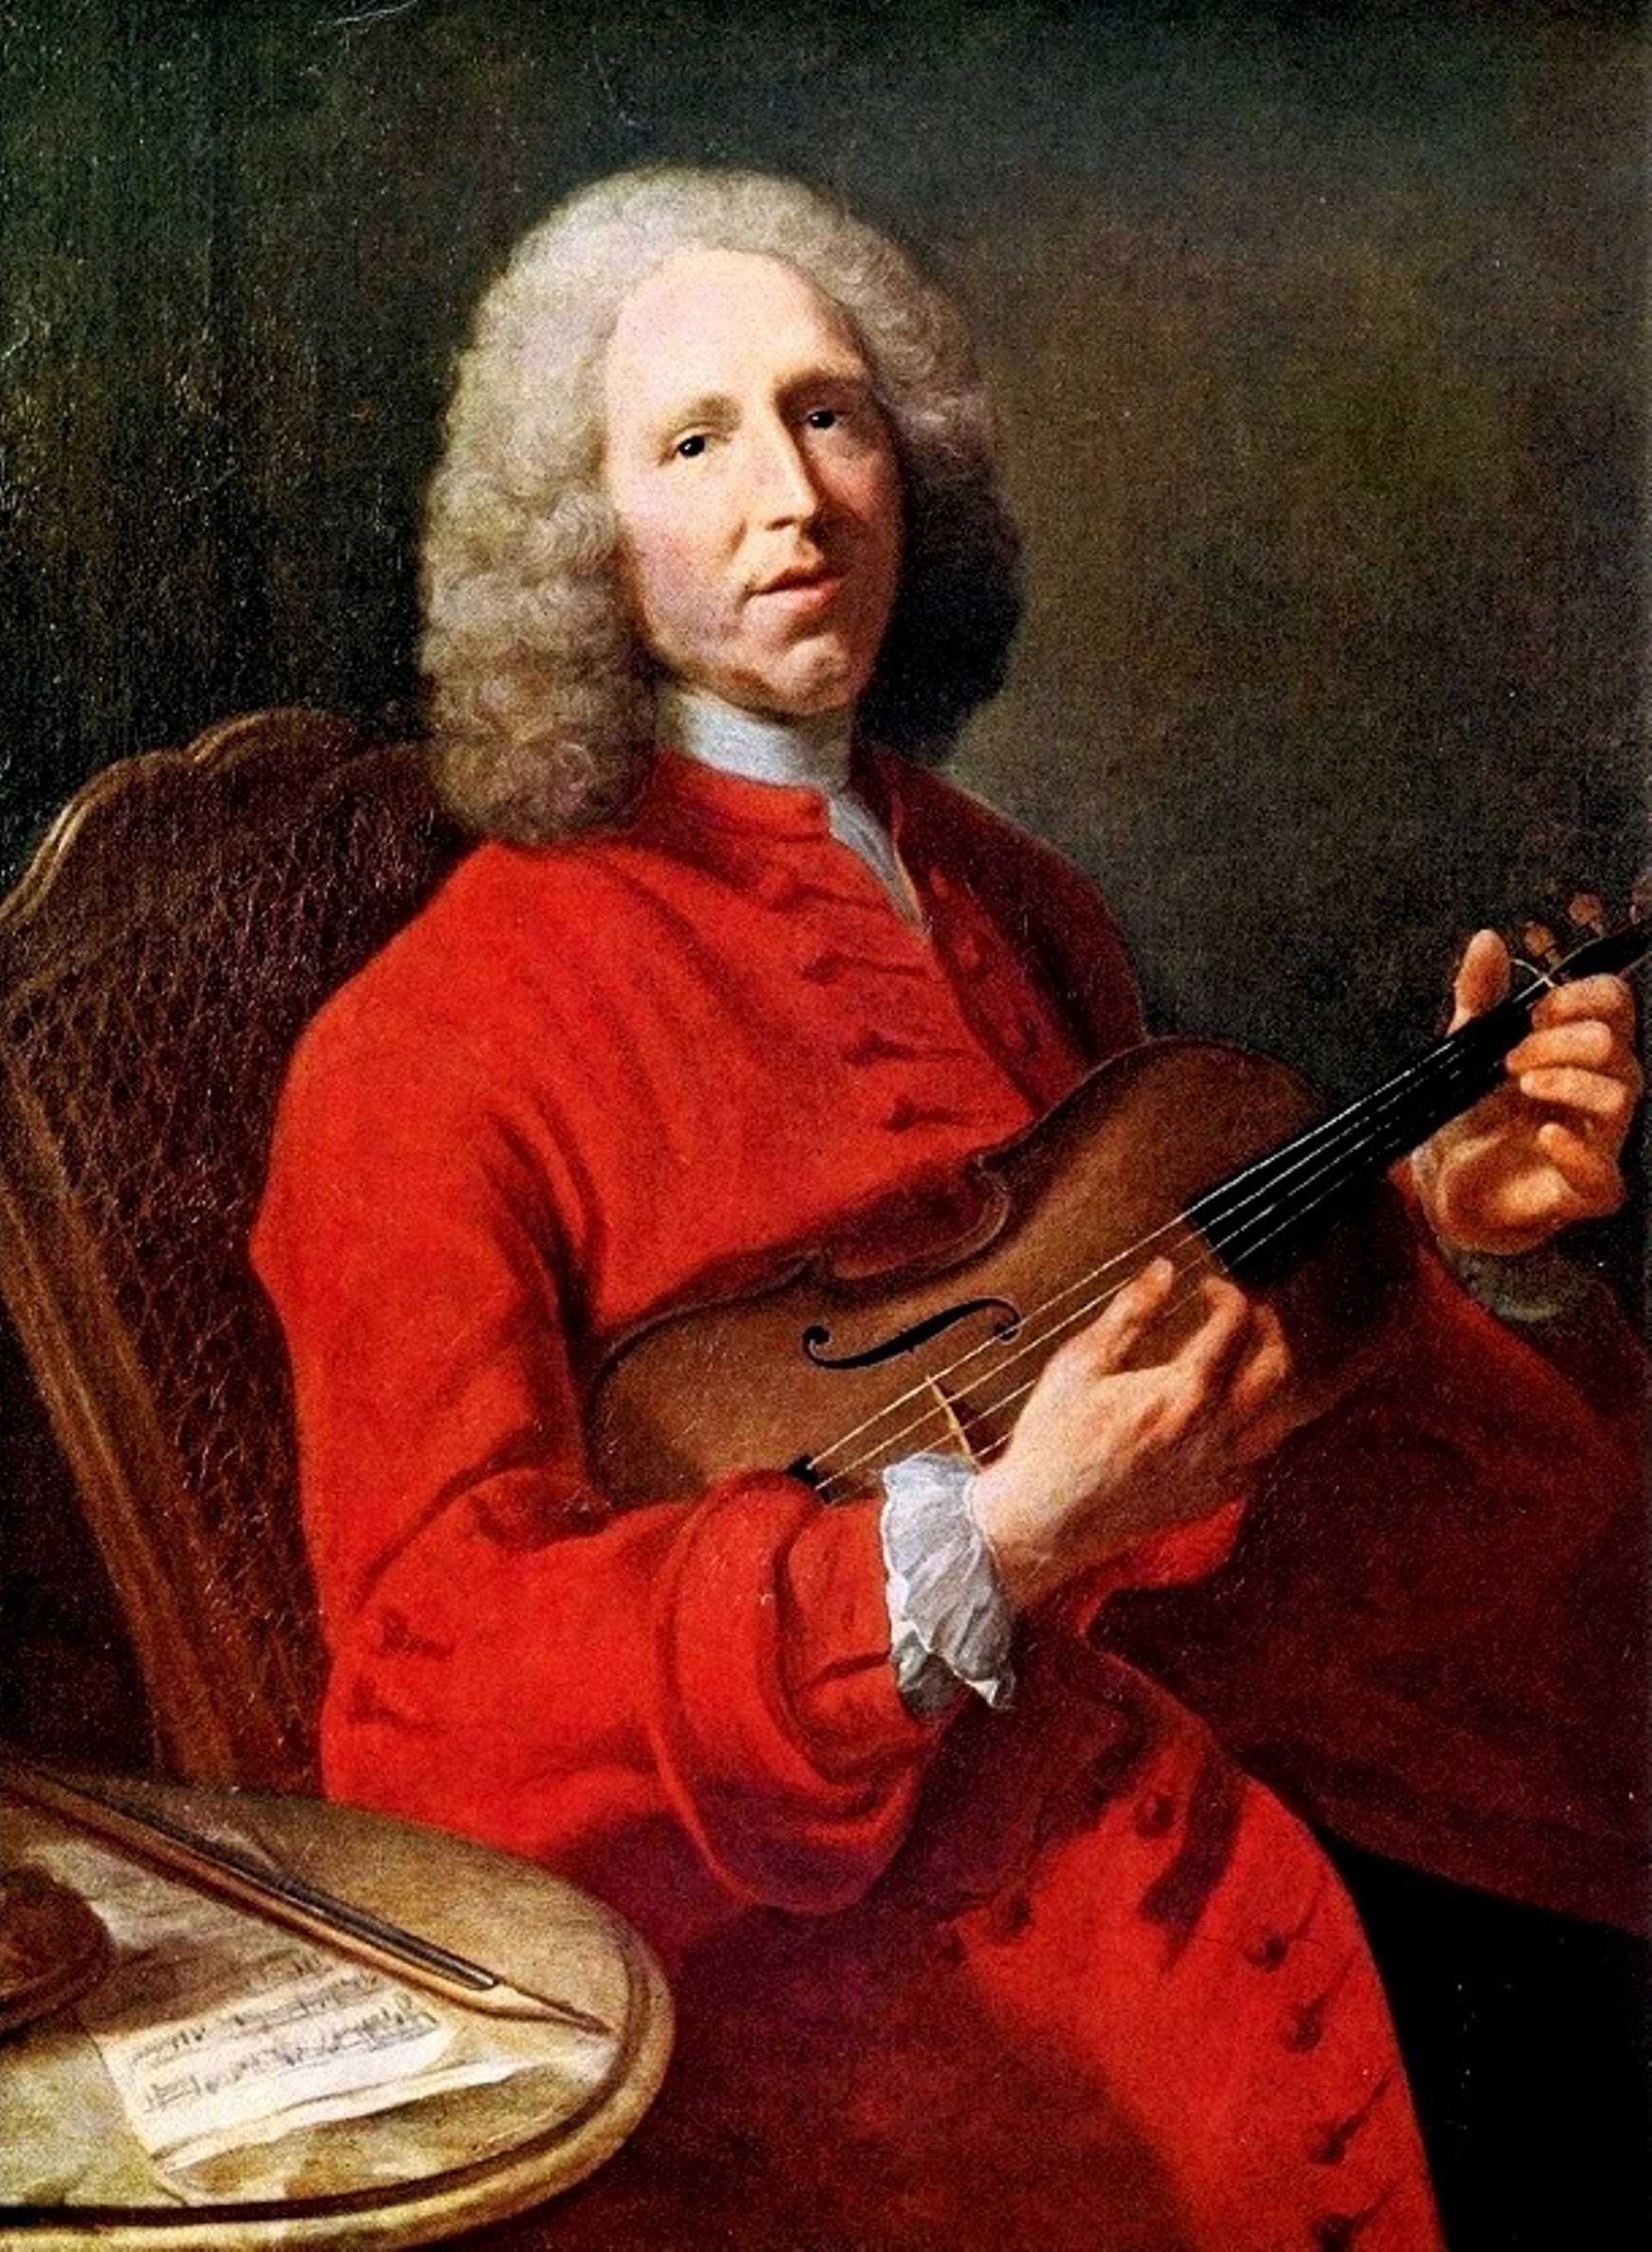 Jean-Philippe Rameau. Portrait attribué à Joseph Aved (1702-1766)
Musée des beaux-arts de Dijon.